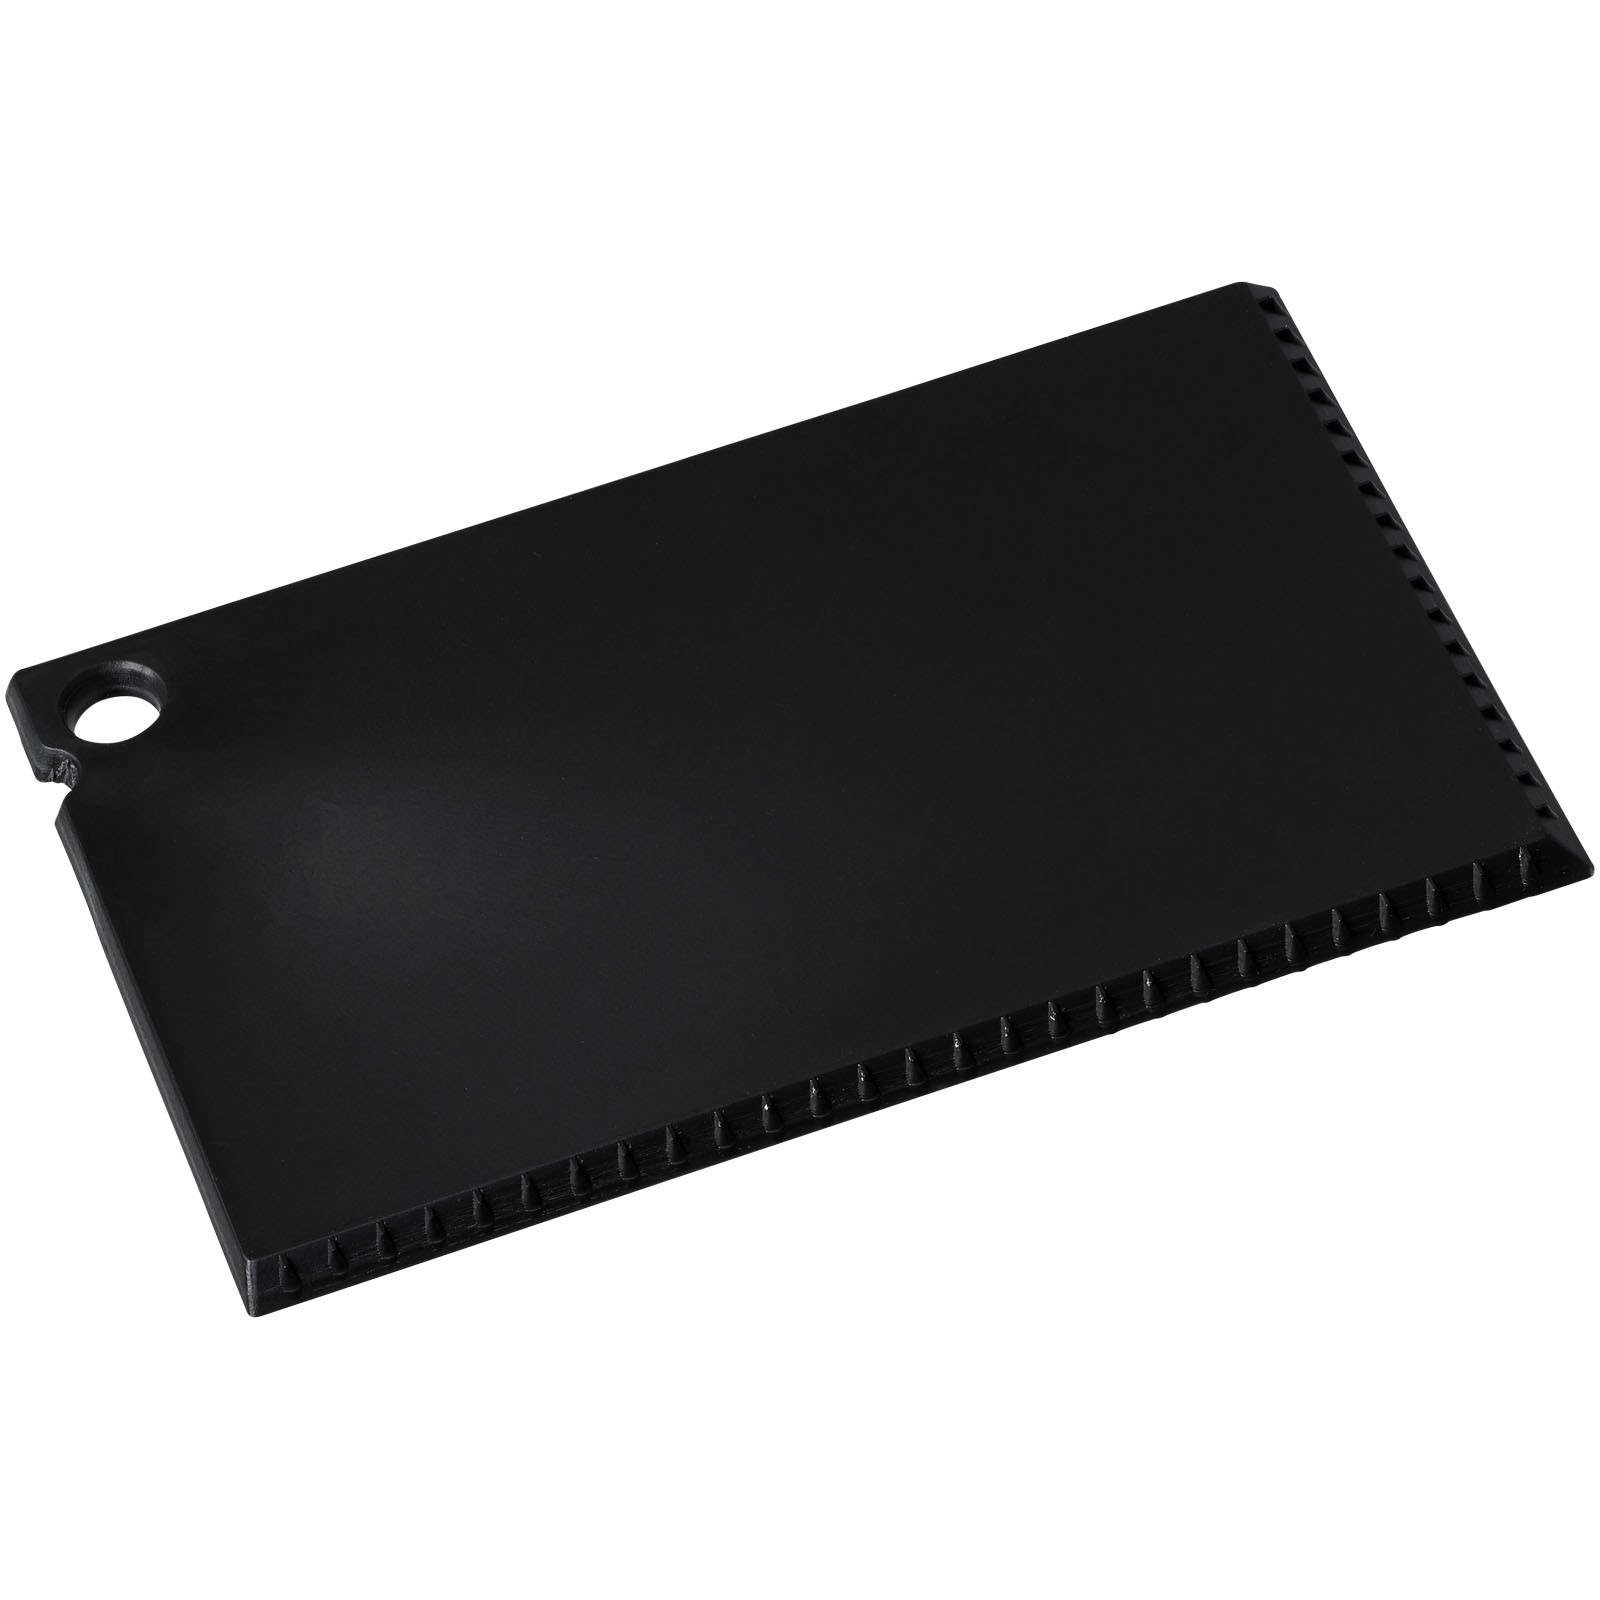 Coro credit card sized ice scraper - Solid Black